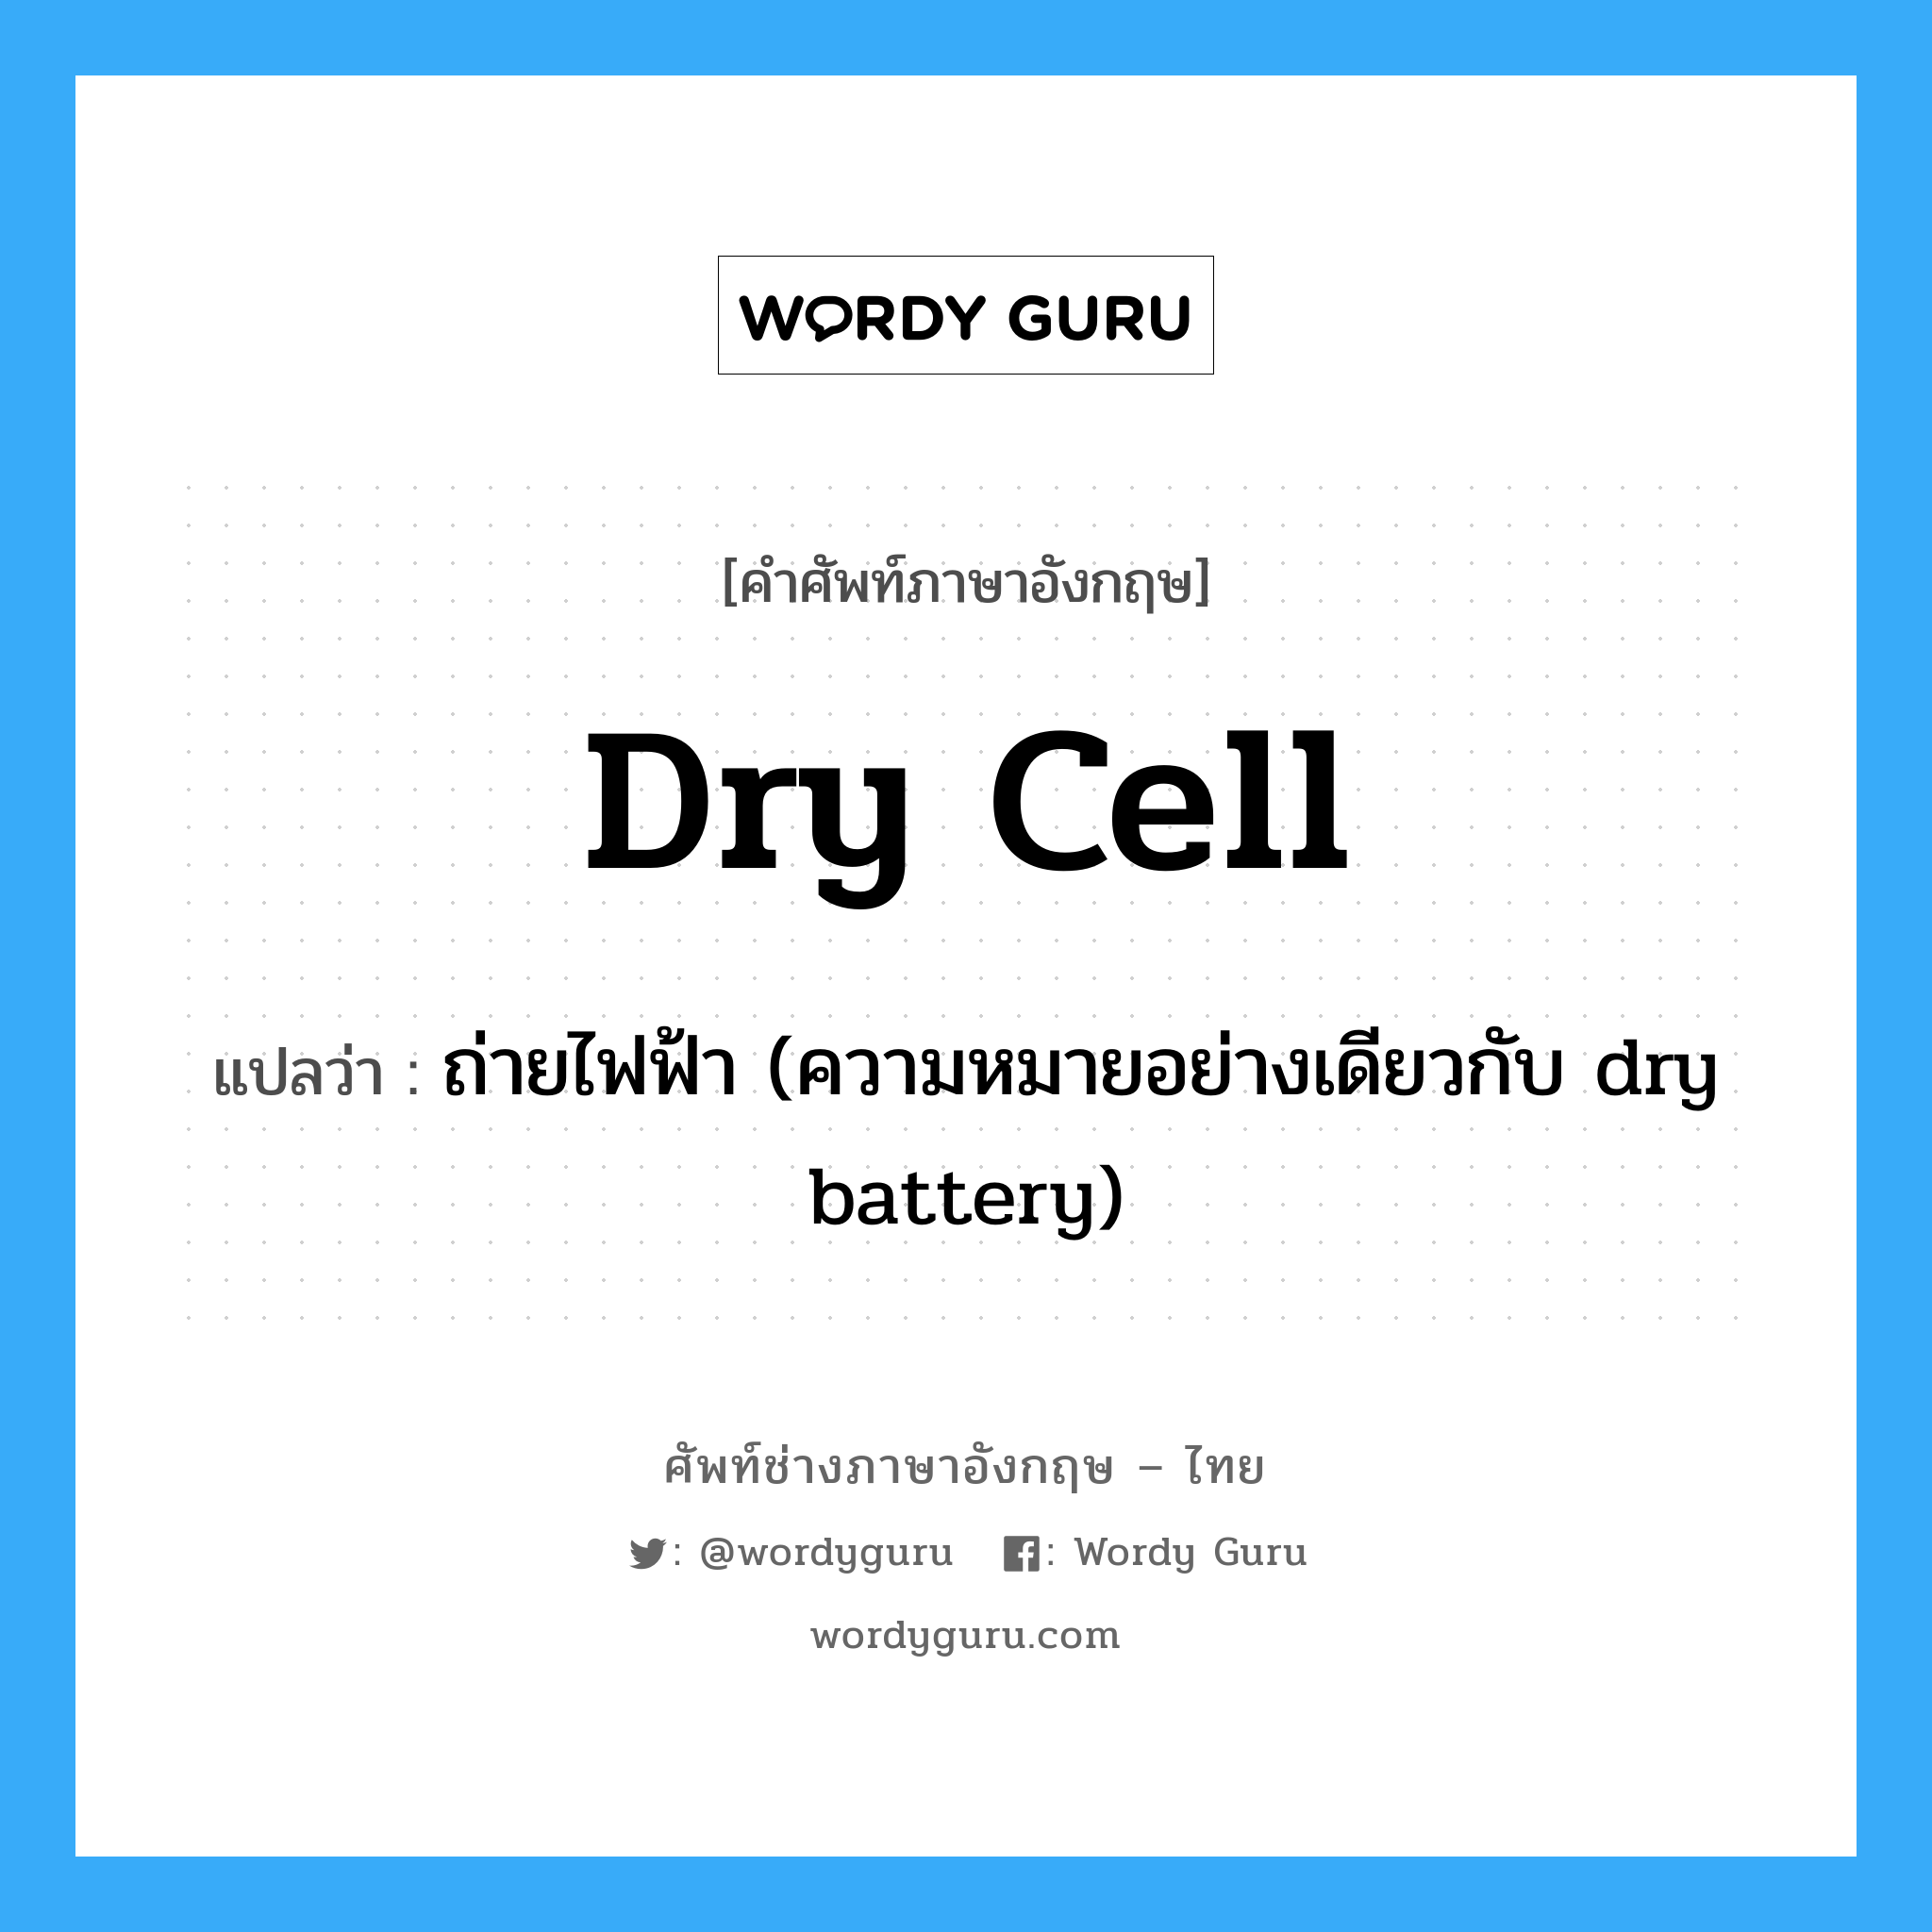 ถ่ายไฟฟ้า (ความหมายอย่างเดียวกับ dry battery) ภาษาอังกฤษ?, คำศัพท์ช่างภาษาอังกฤษ - ไทย ถ่ายไฟฟ้า (ความหมายอย่างเดียวกับ dry battery) คำศัพท์ภาษาอังกฤษ ถ่ายไฟฟ้า (ความหมายอย่างเดียวกับ dry battery) แปลว่า dry cell